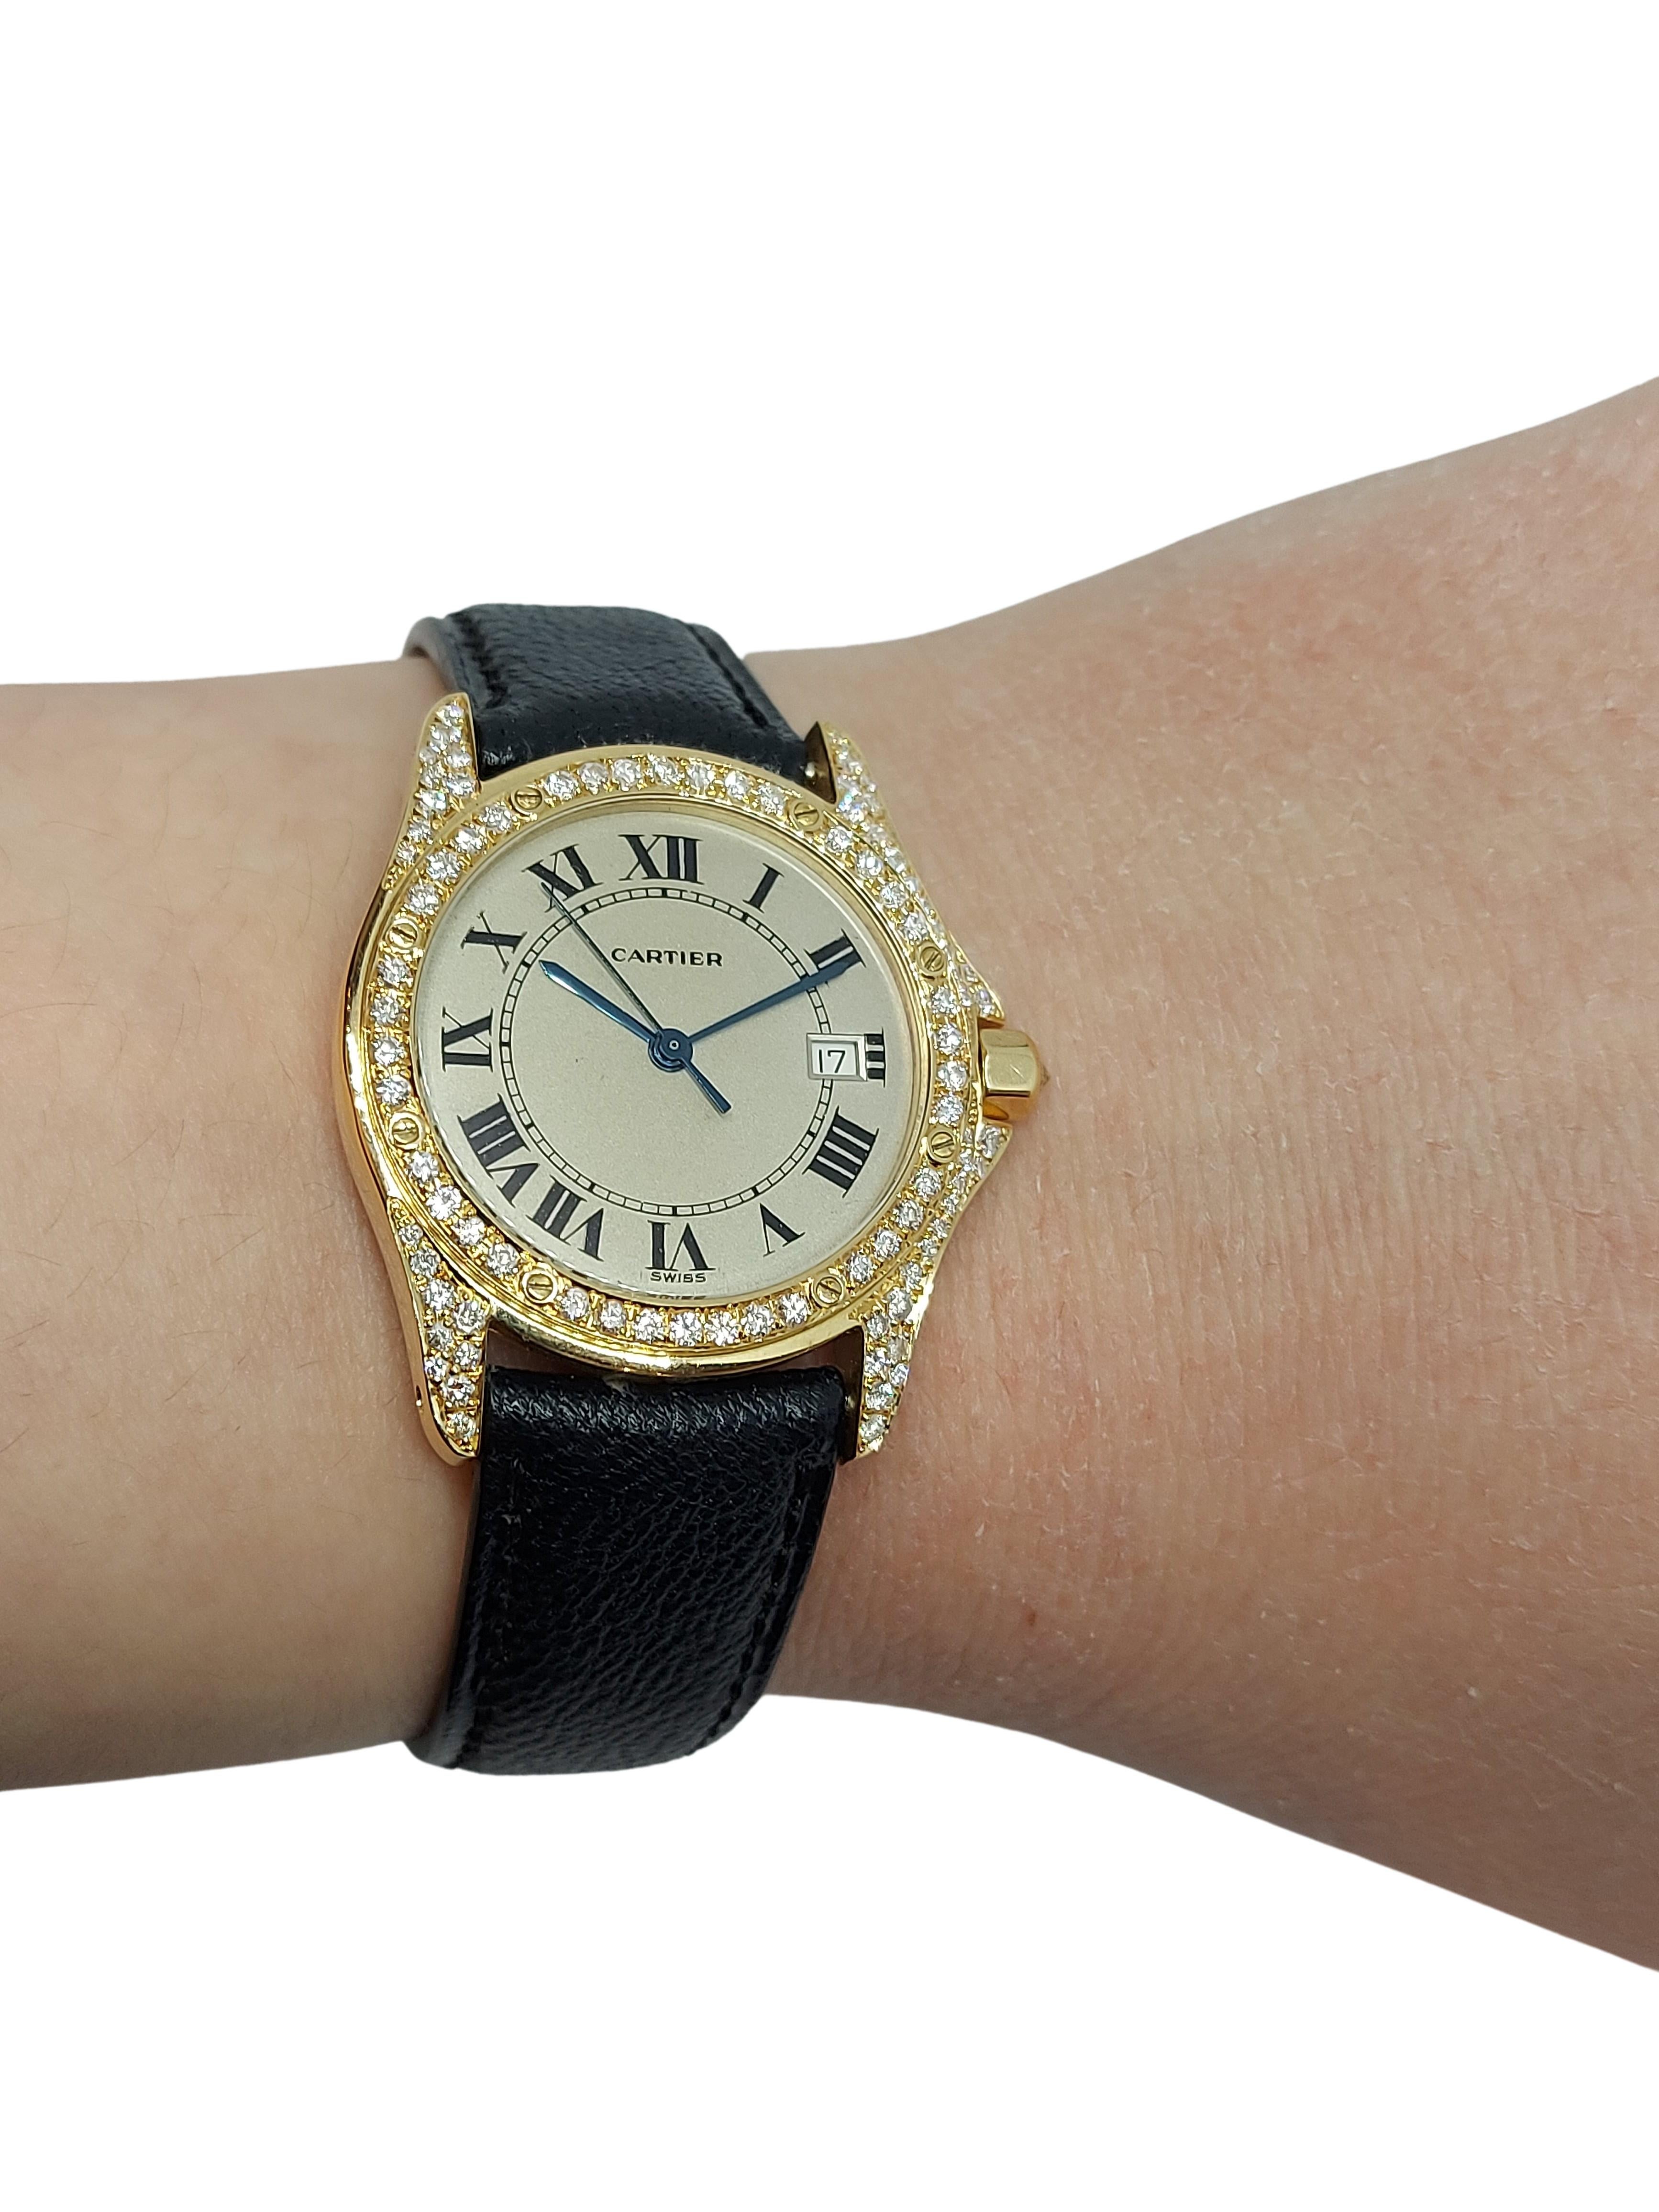 Cartier Cougar Wristwatch, 18 Karat Yellow Gold, Diamond Bezel, Quartz 7